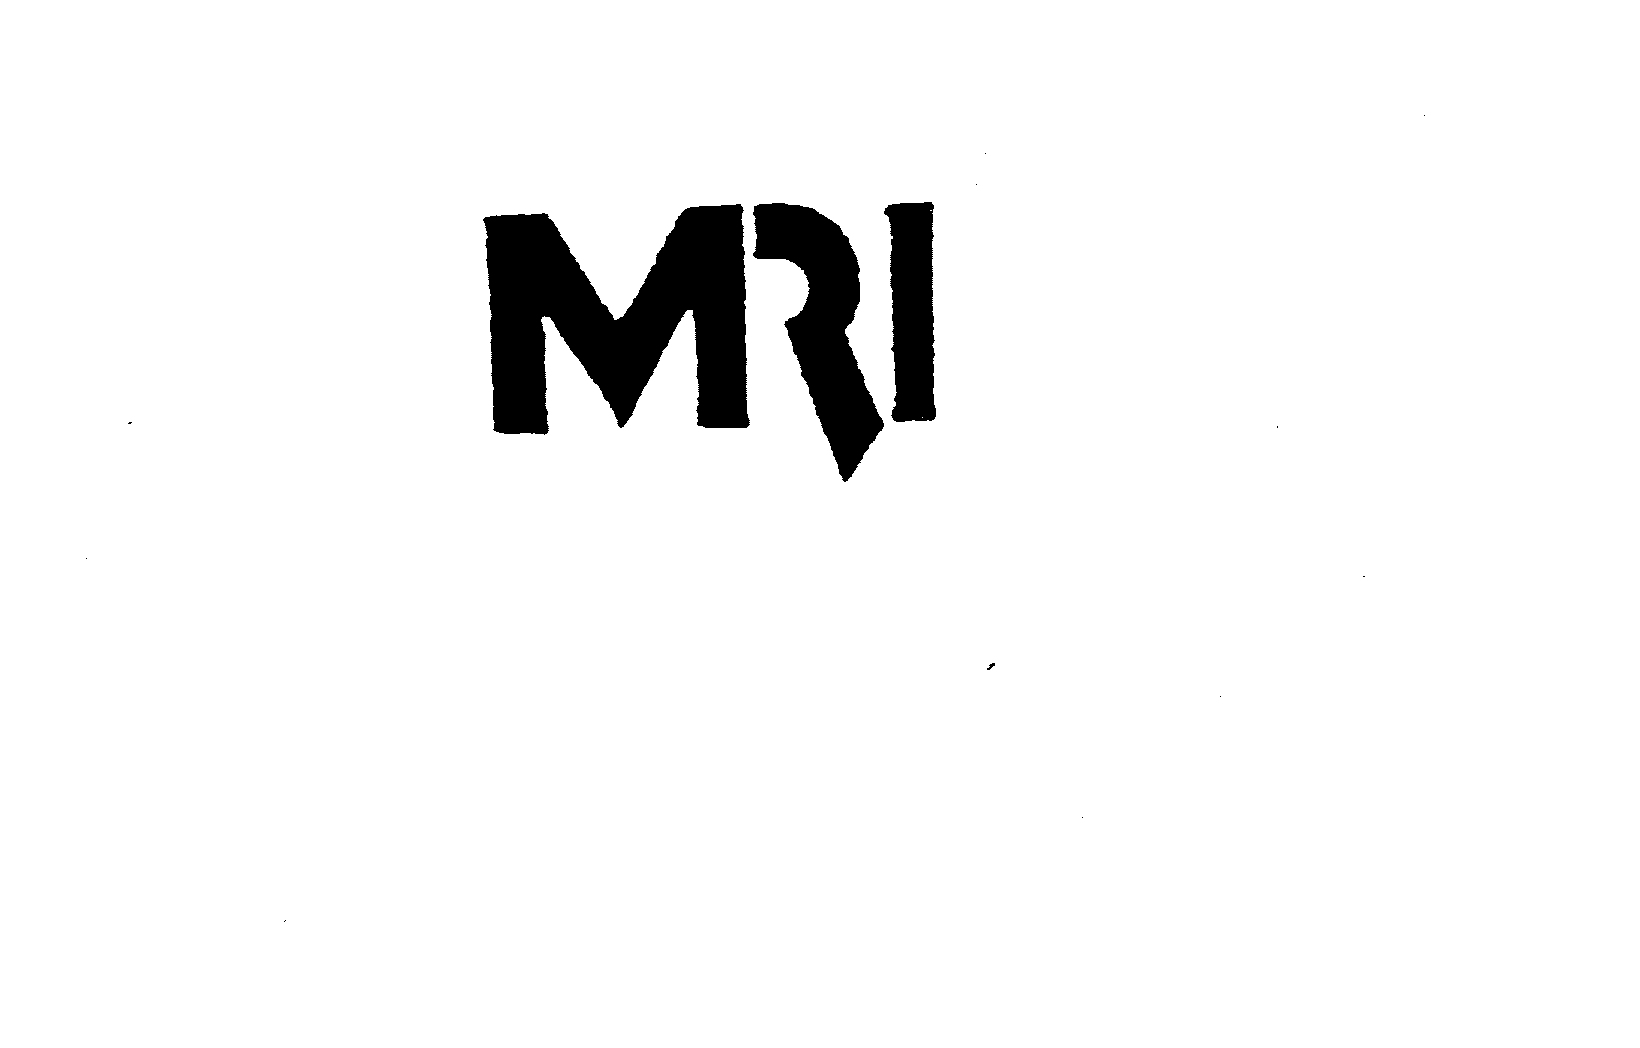  MRI